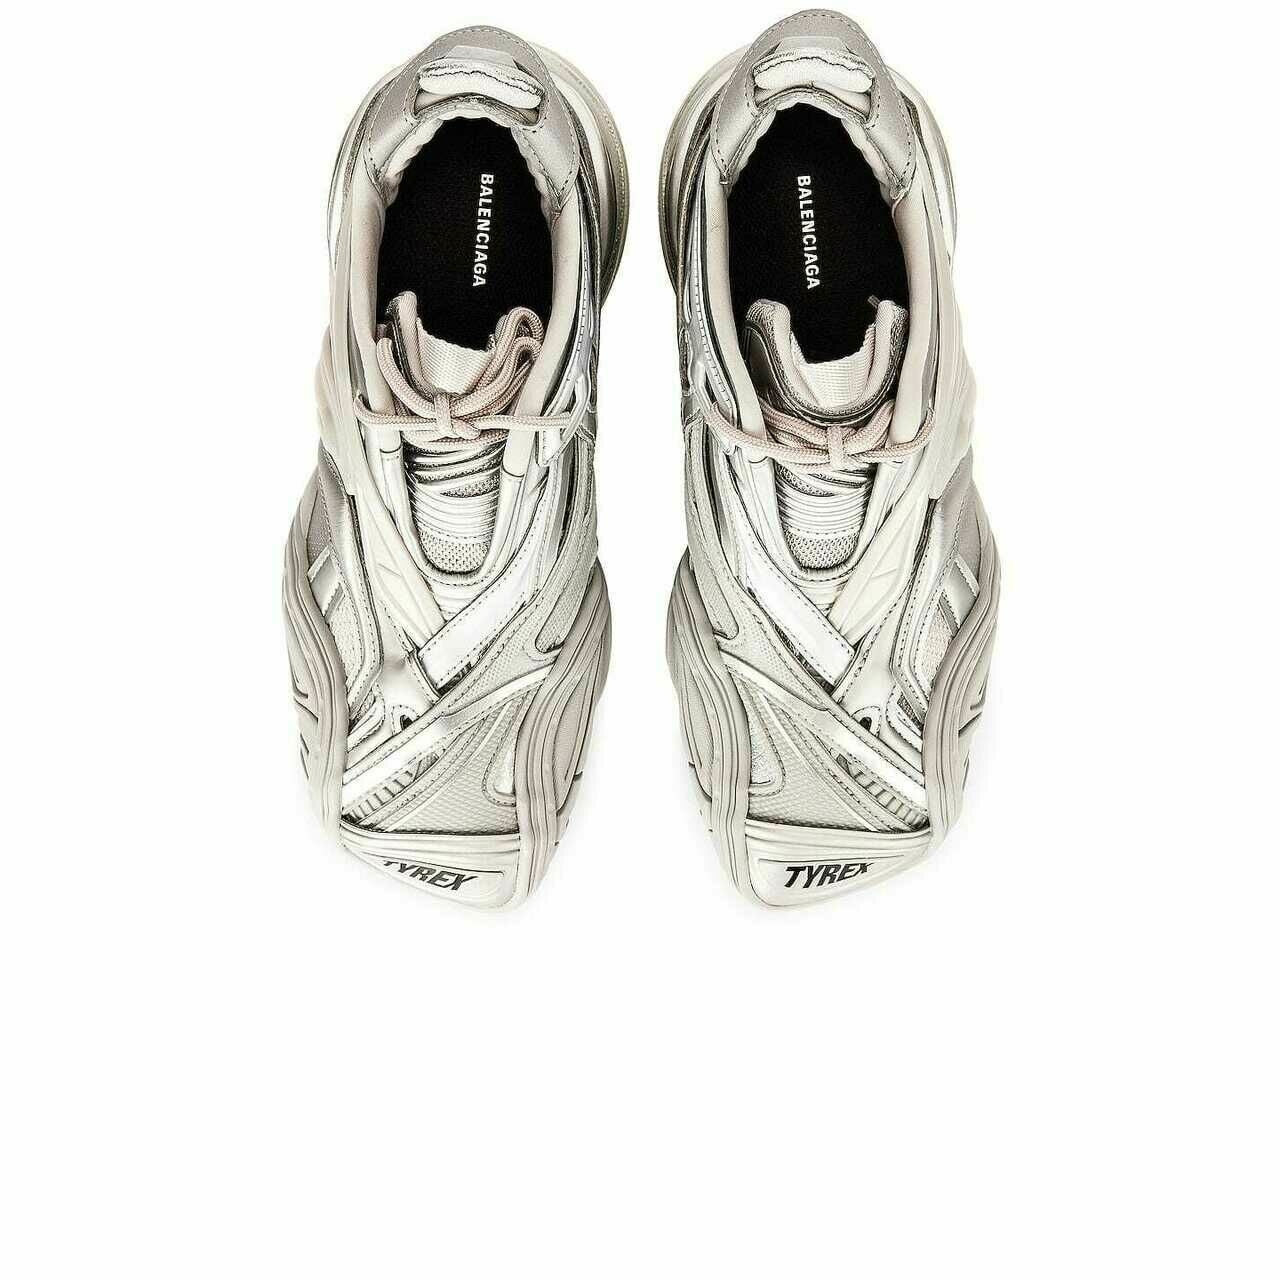 Balenciaga Silver Sneakers